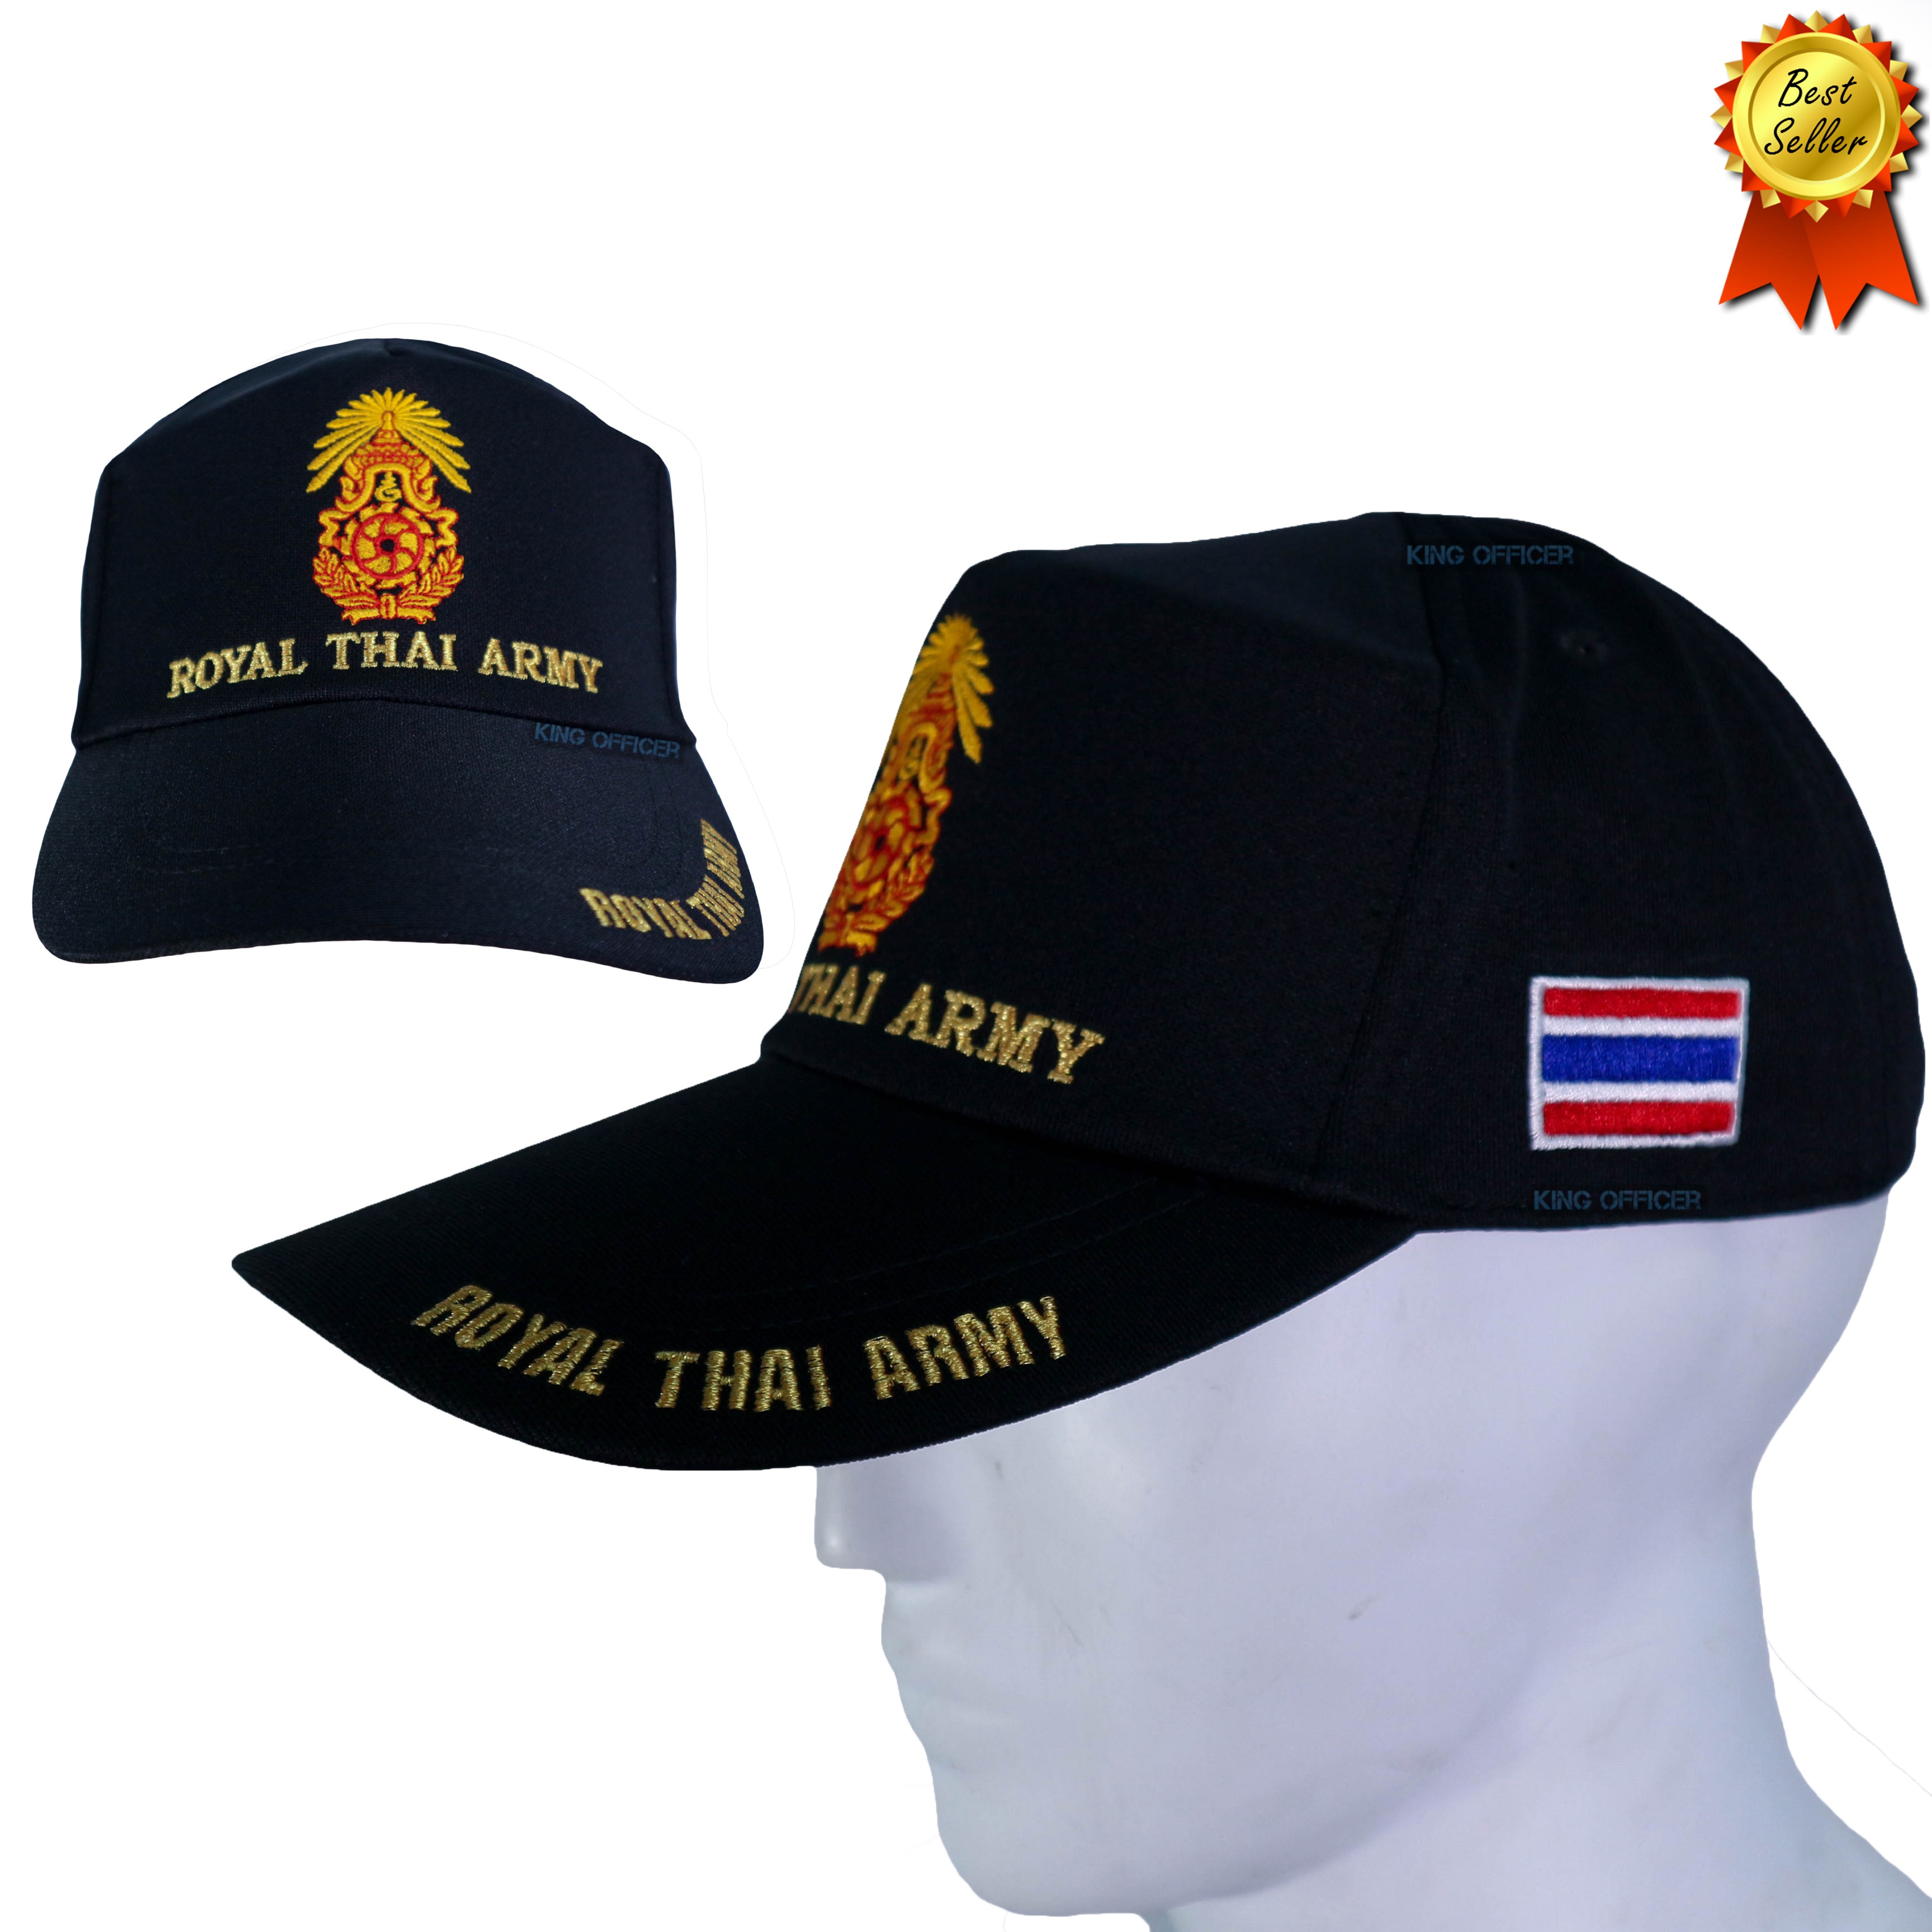 หมวกทหารบก สีดำ หมวก ปักตรา กองทัพบก ทบ. ROYAL THAI ARMY ธงชาติไทย